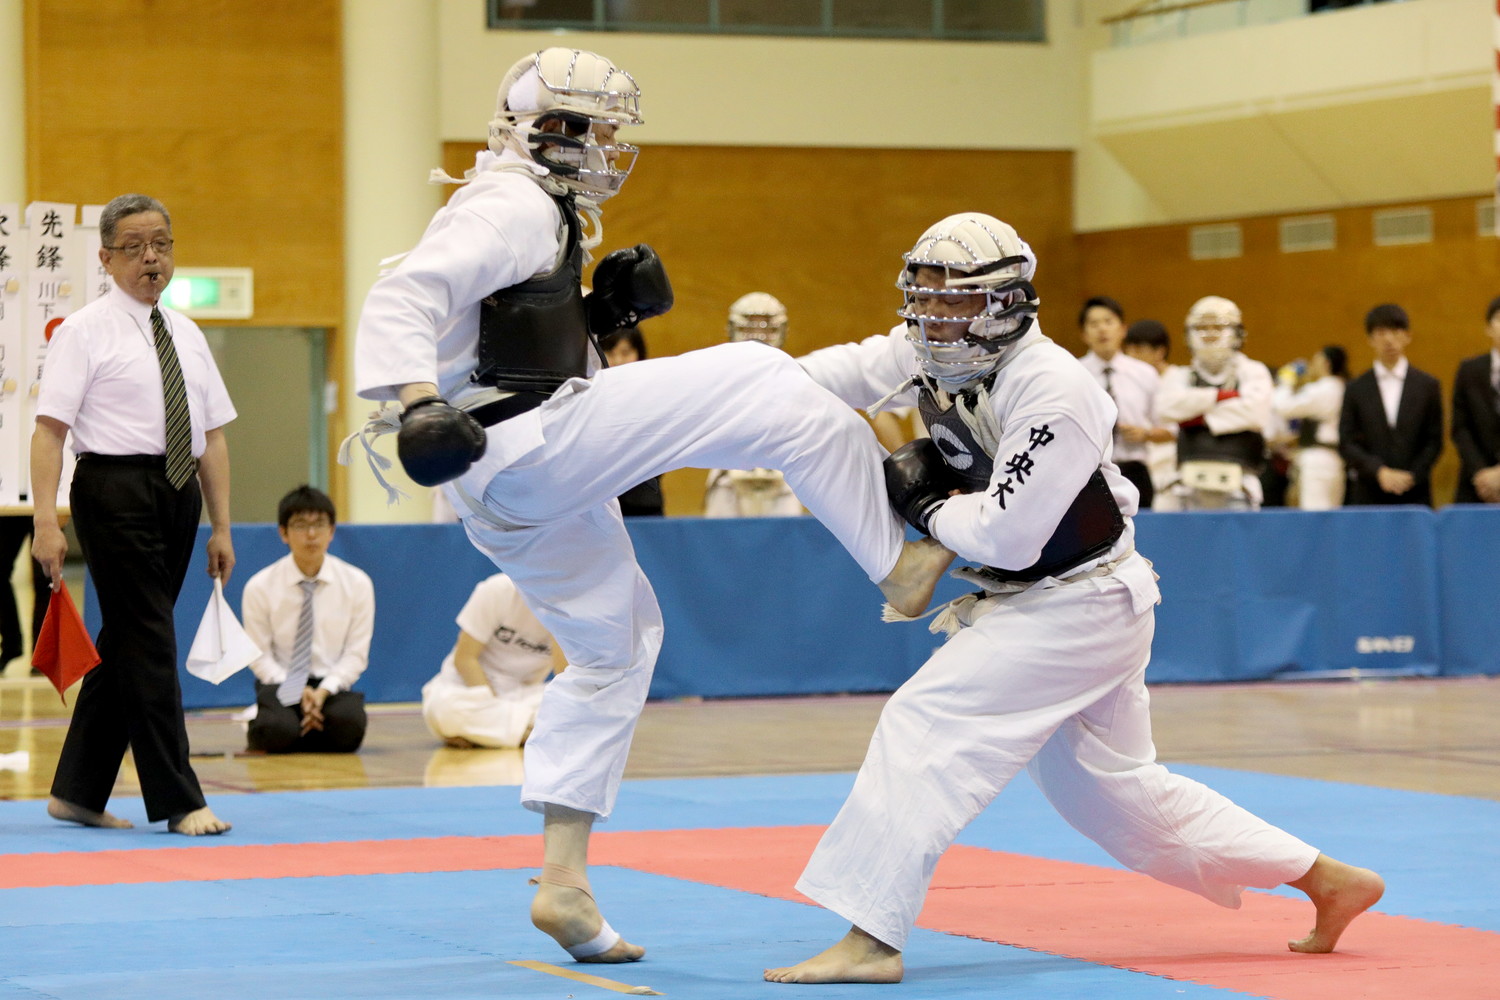 日本拳法第32回東日本大学リーグ戦 
E5D_6937.JPG